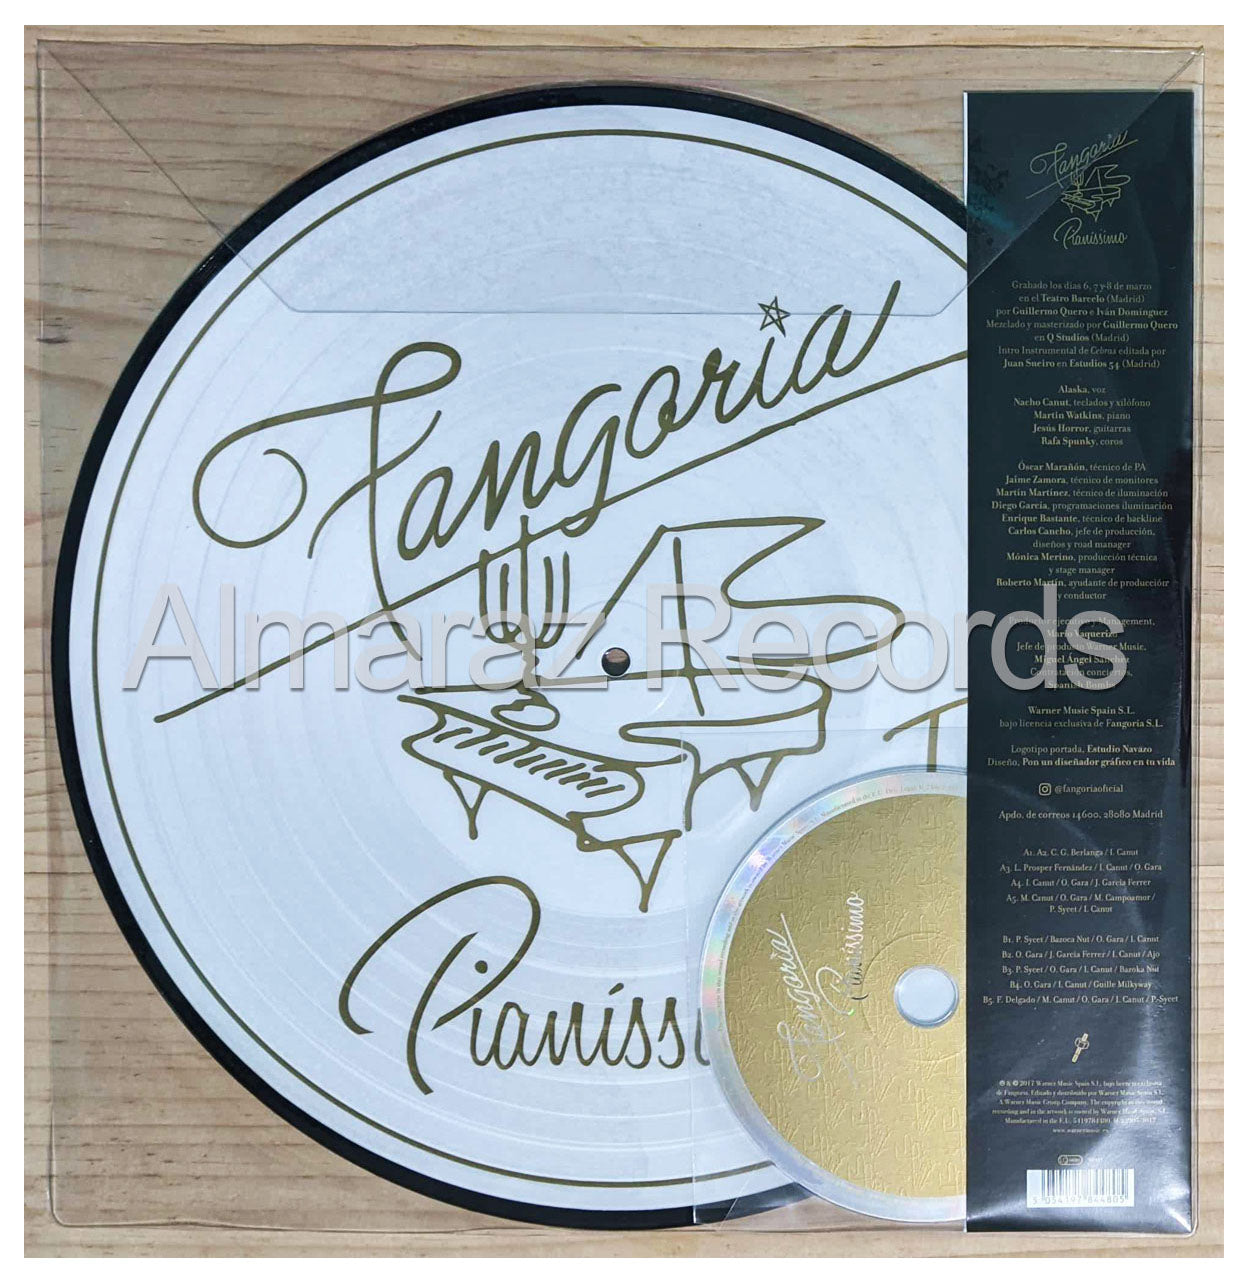 Fangoria Pianissimo Vinyl LP+CD